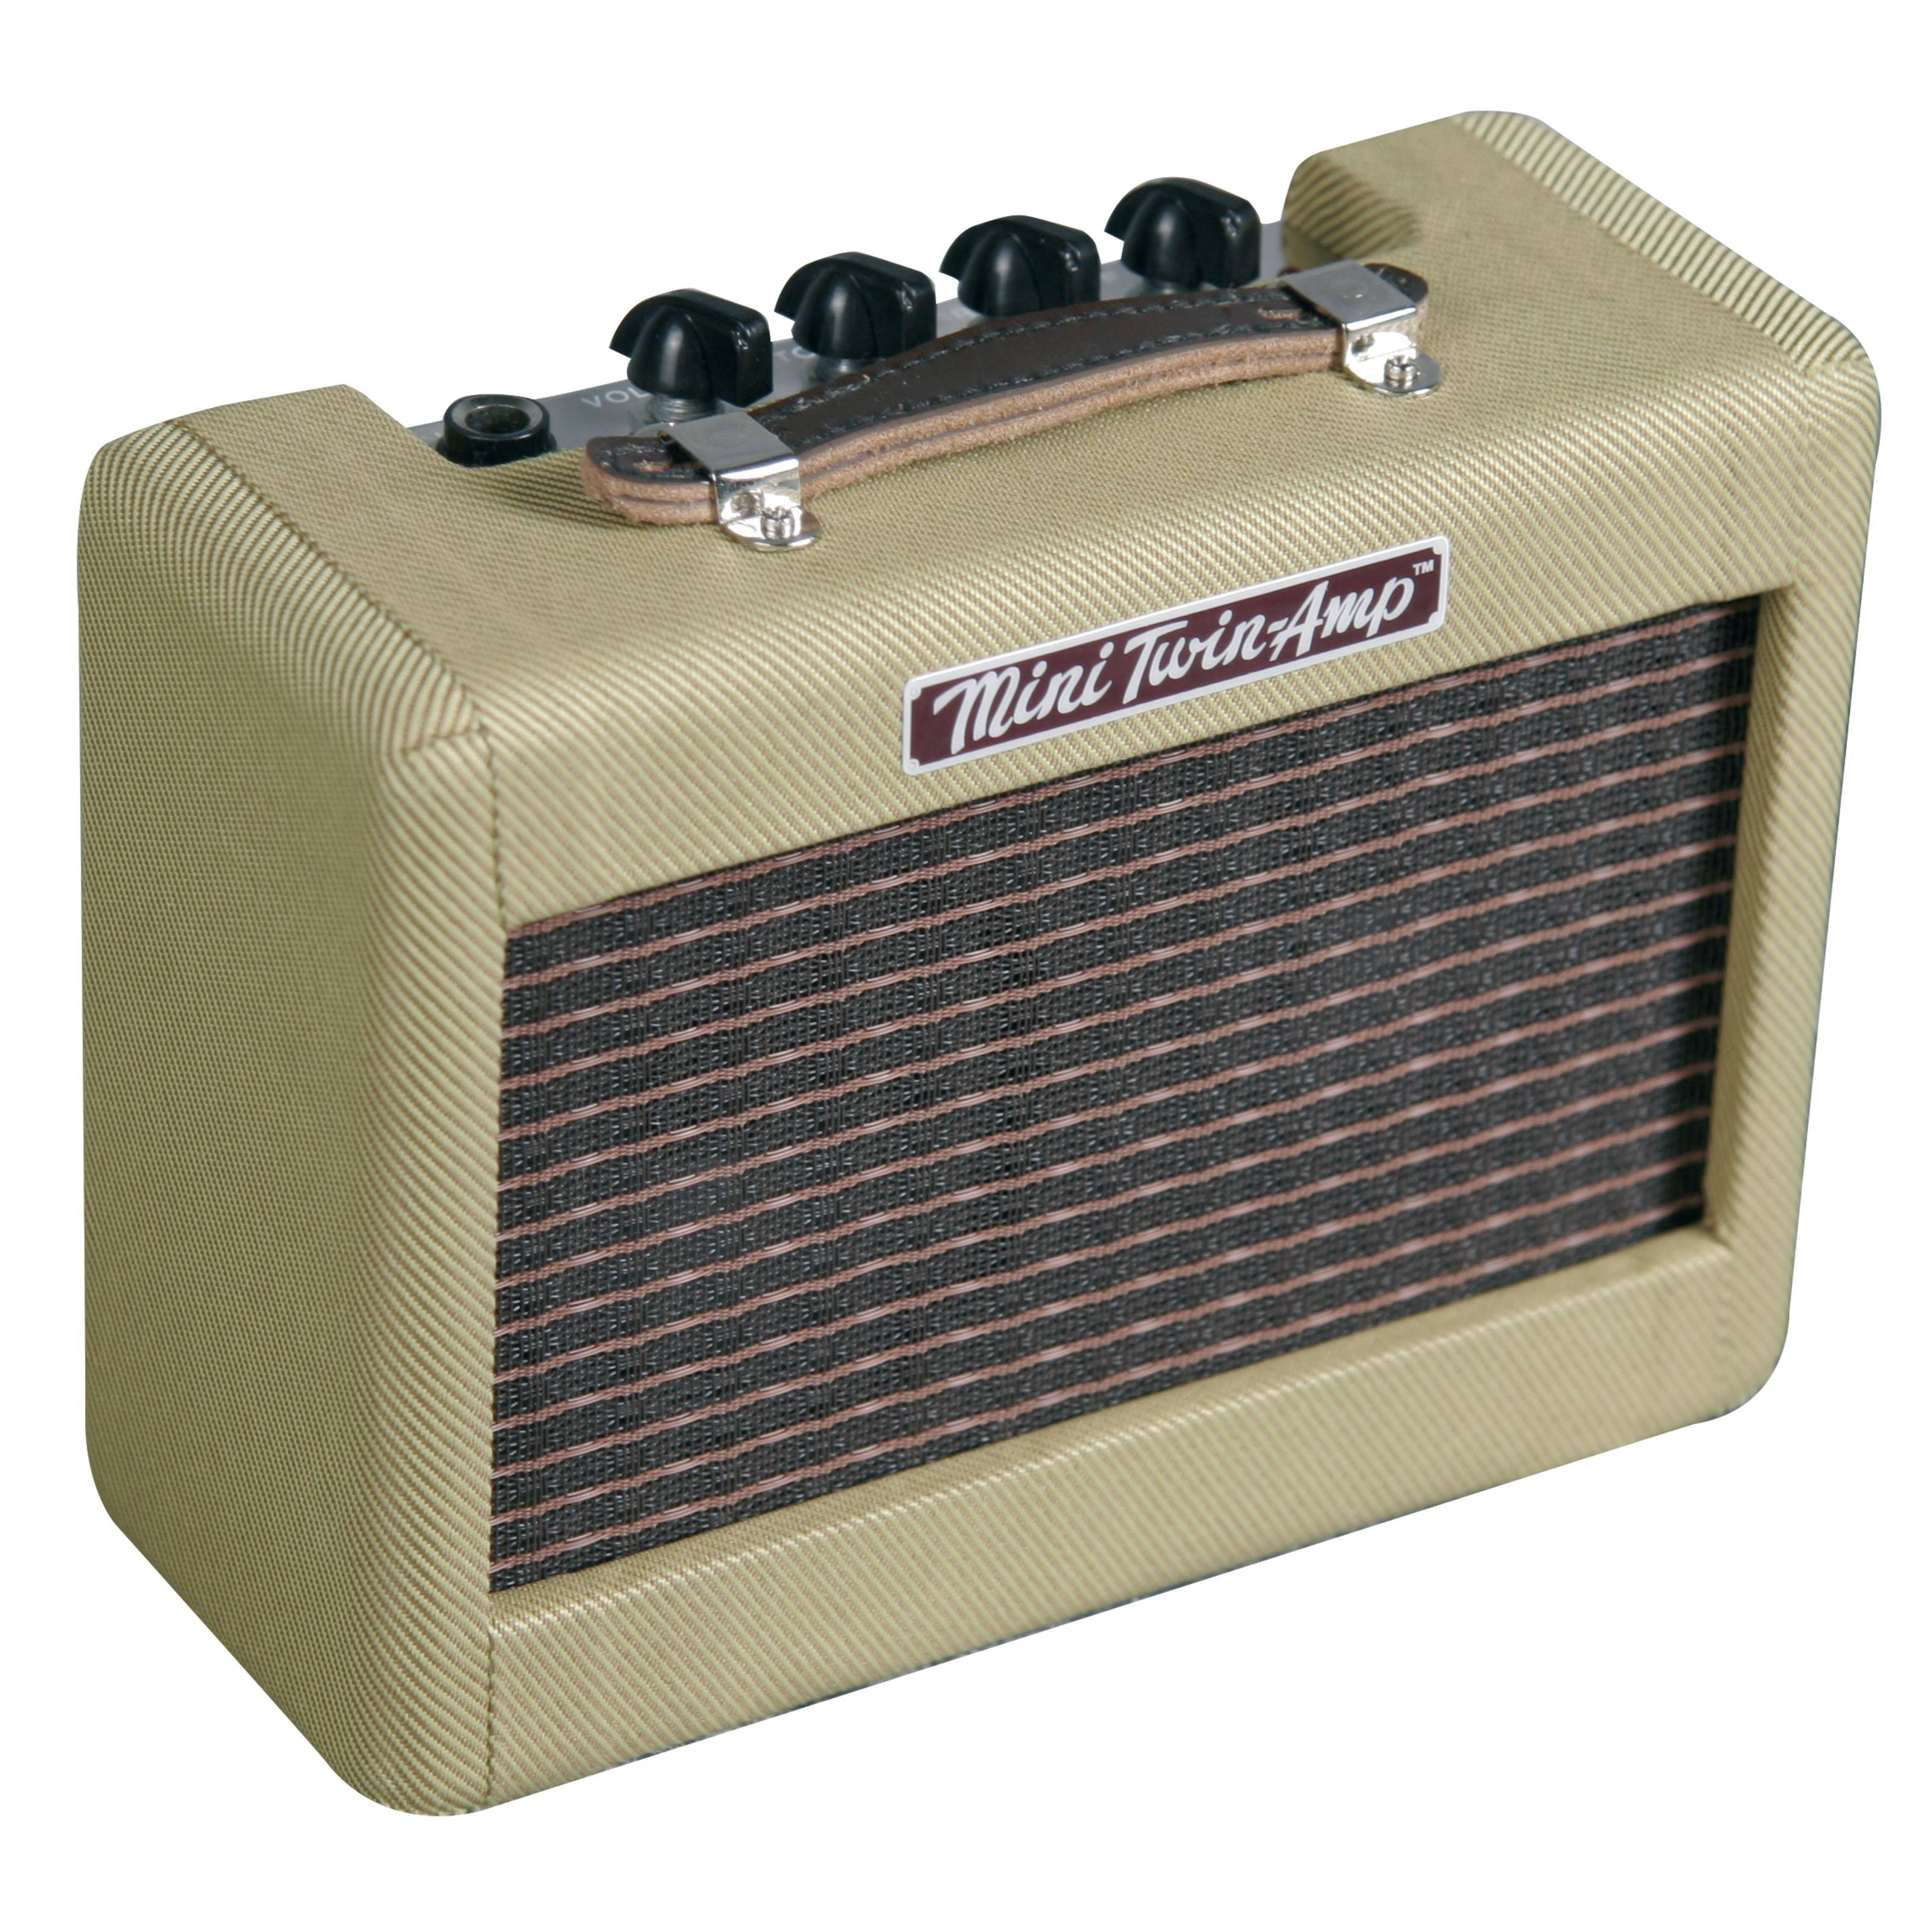 Fender '57 Twin Mini Guitar Amplifier